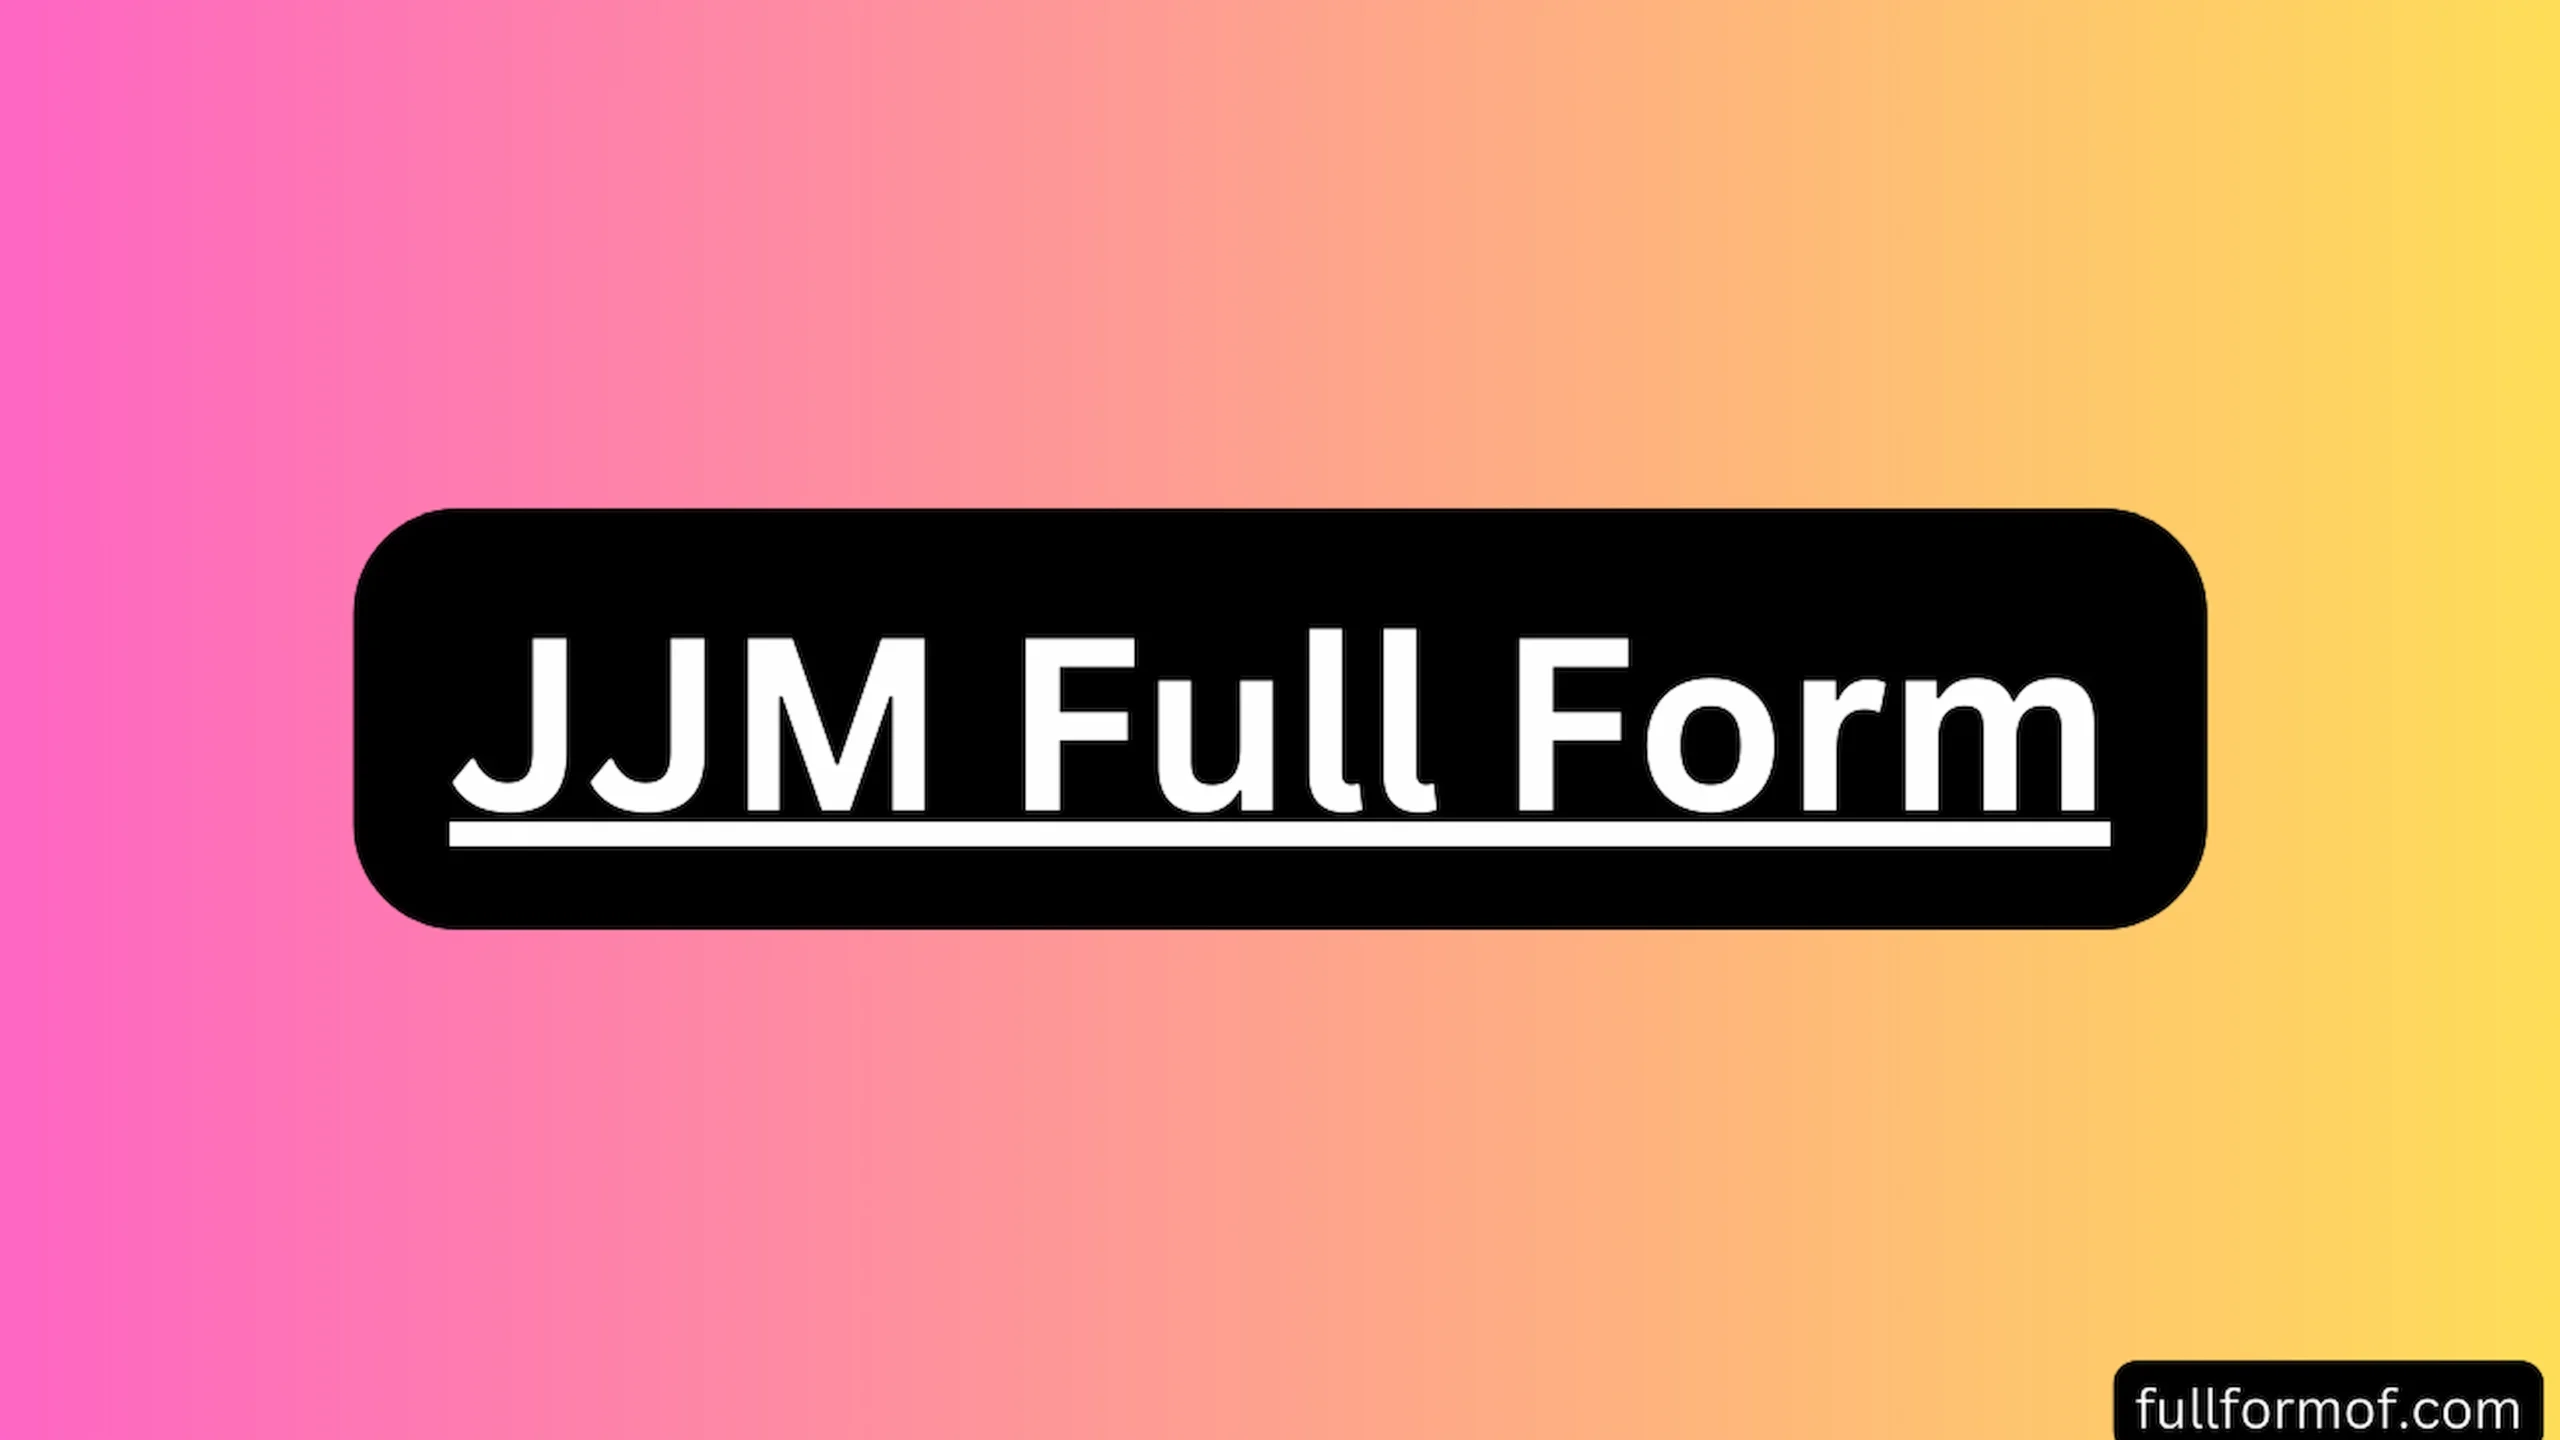 JJM Full Form